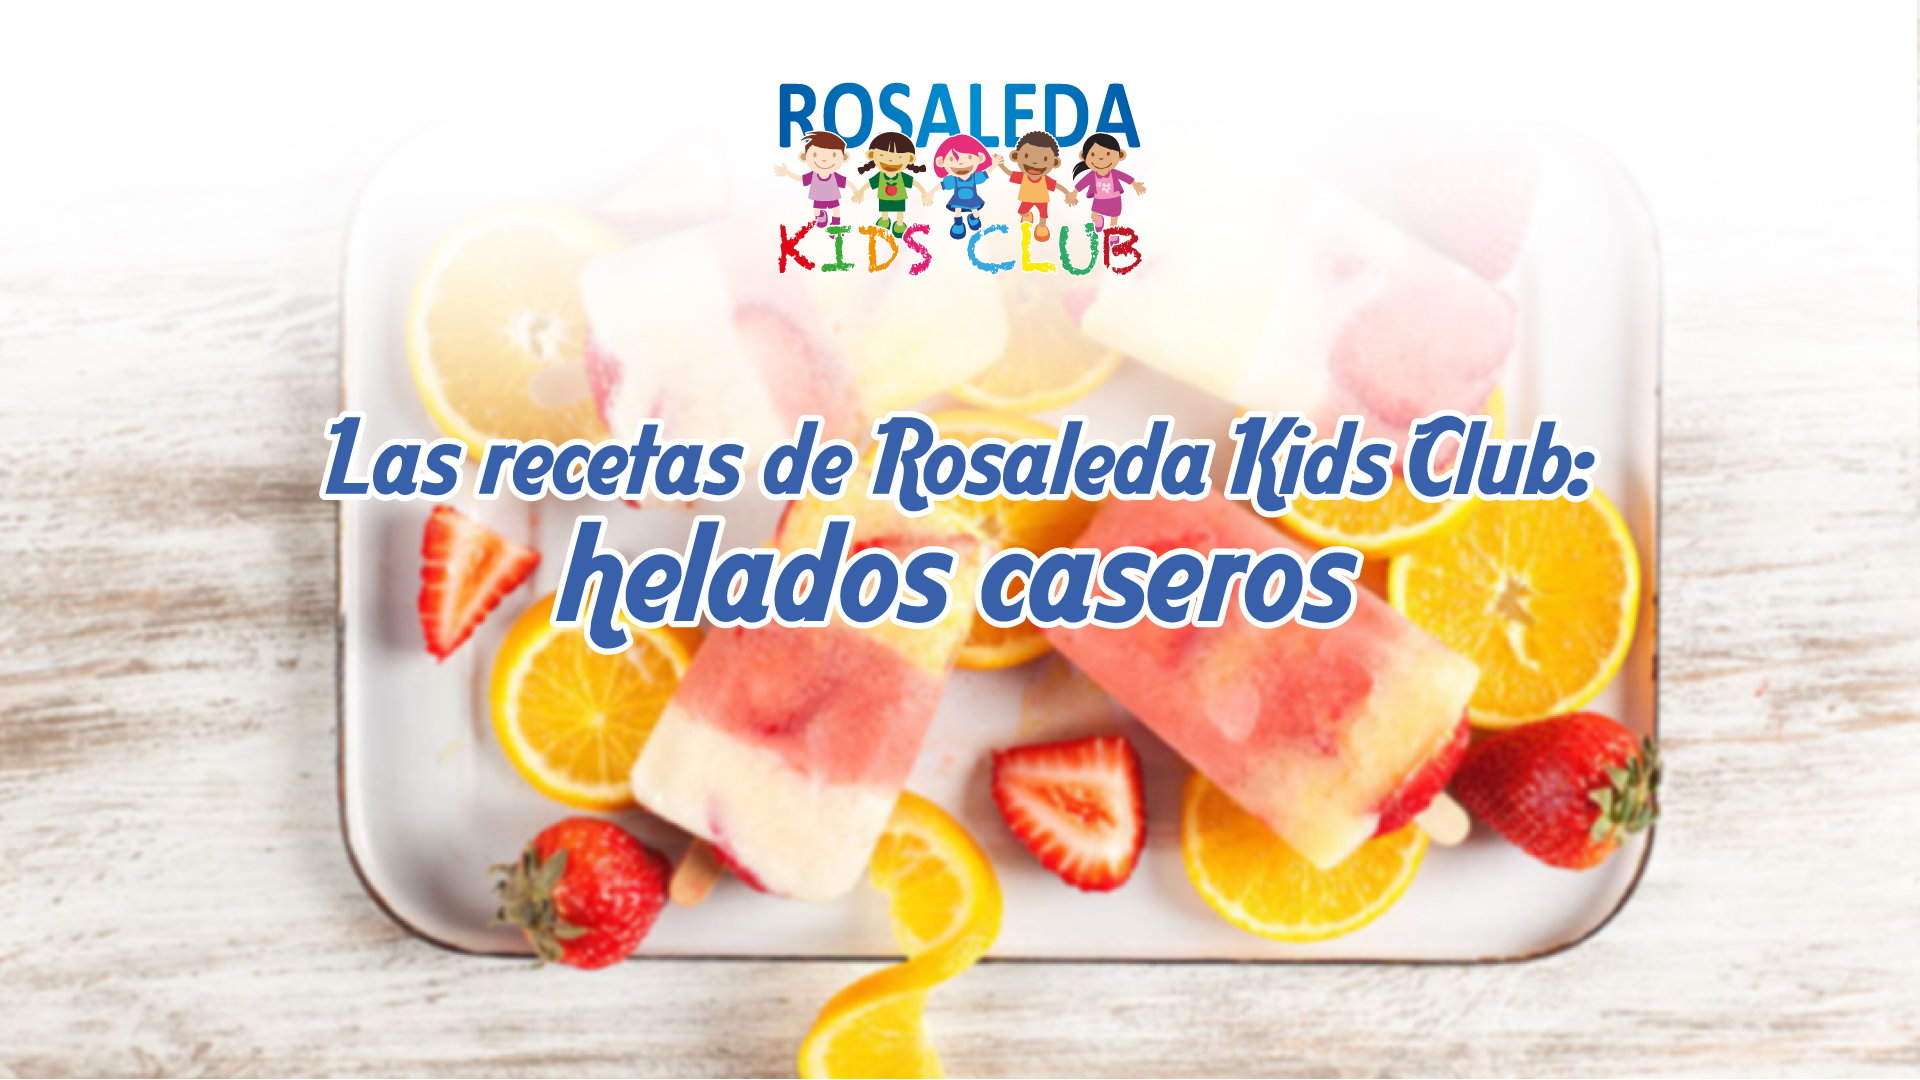 Las recetas de Rosaleda Kids Club: helados caseros